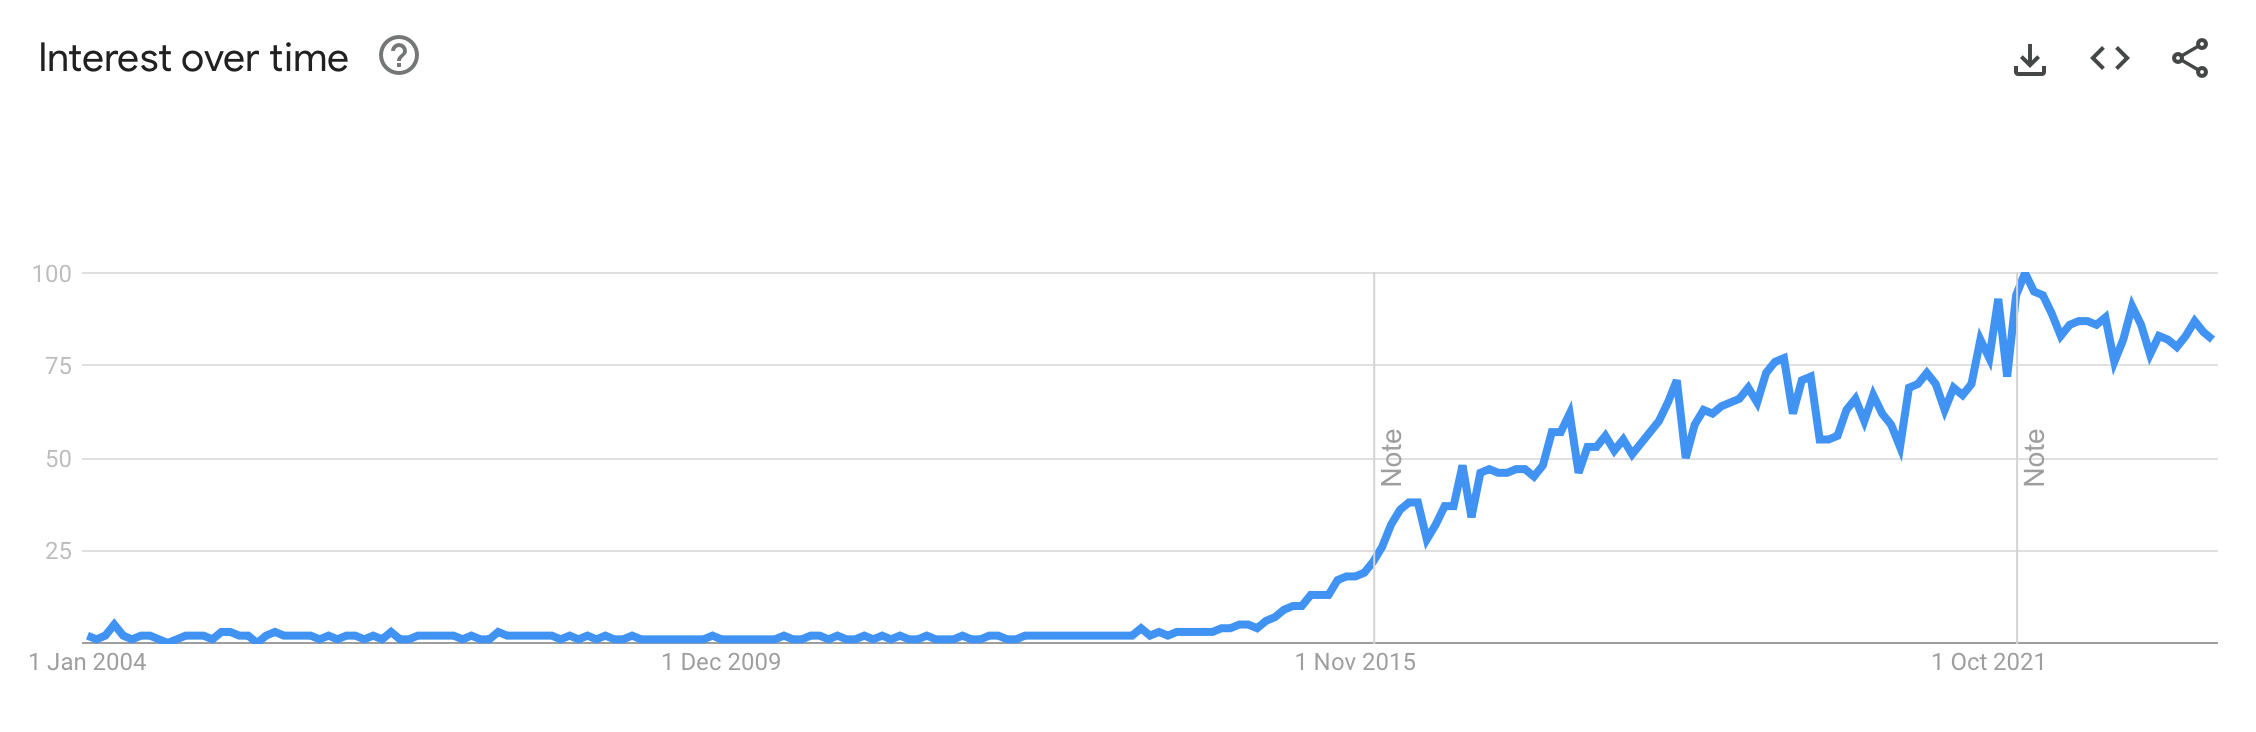 Google Trends data for fintech